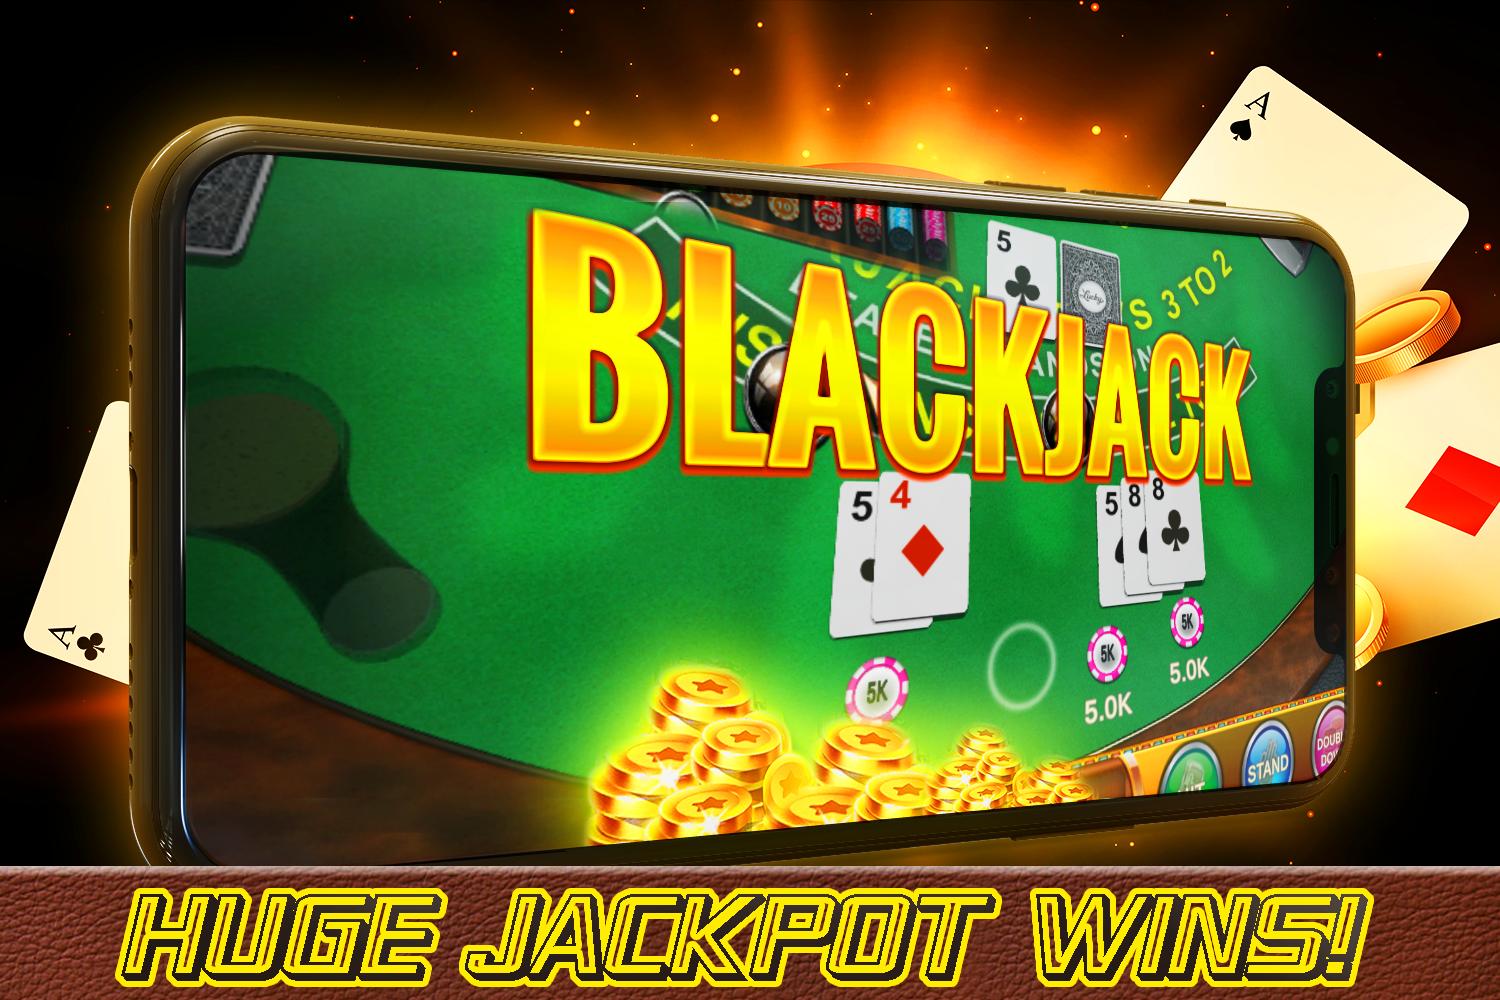 Blackjack - Free Vegas Casino Card Game 1.2 Screenshot 16